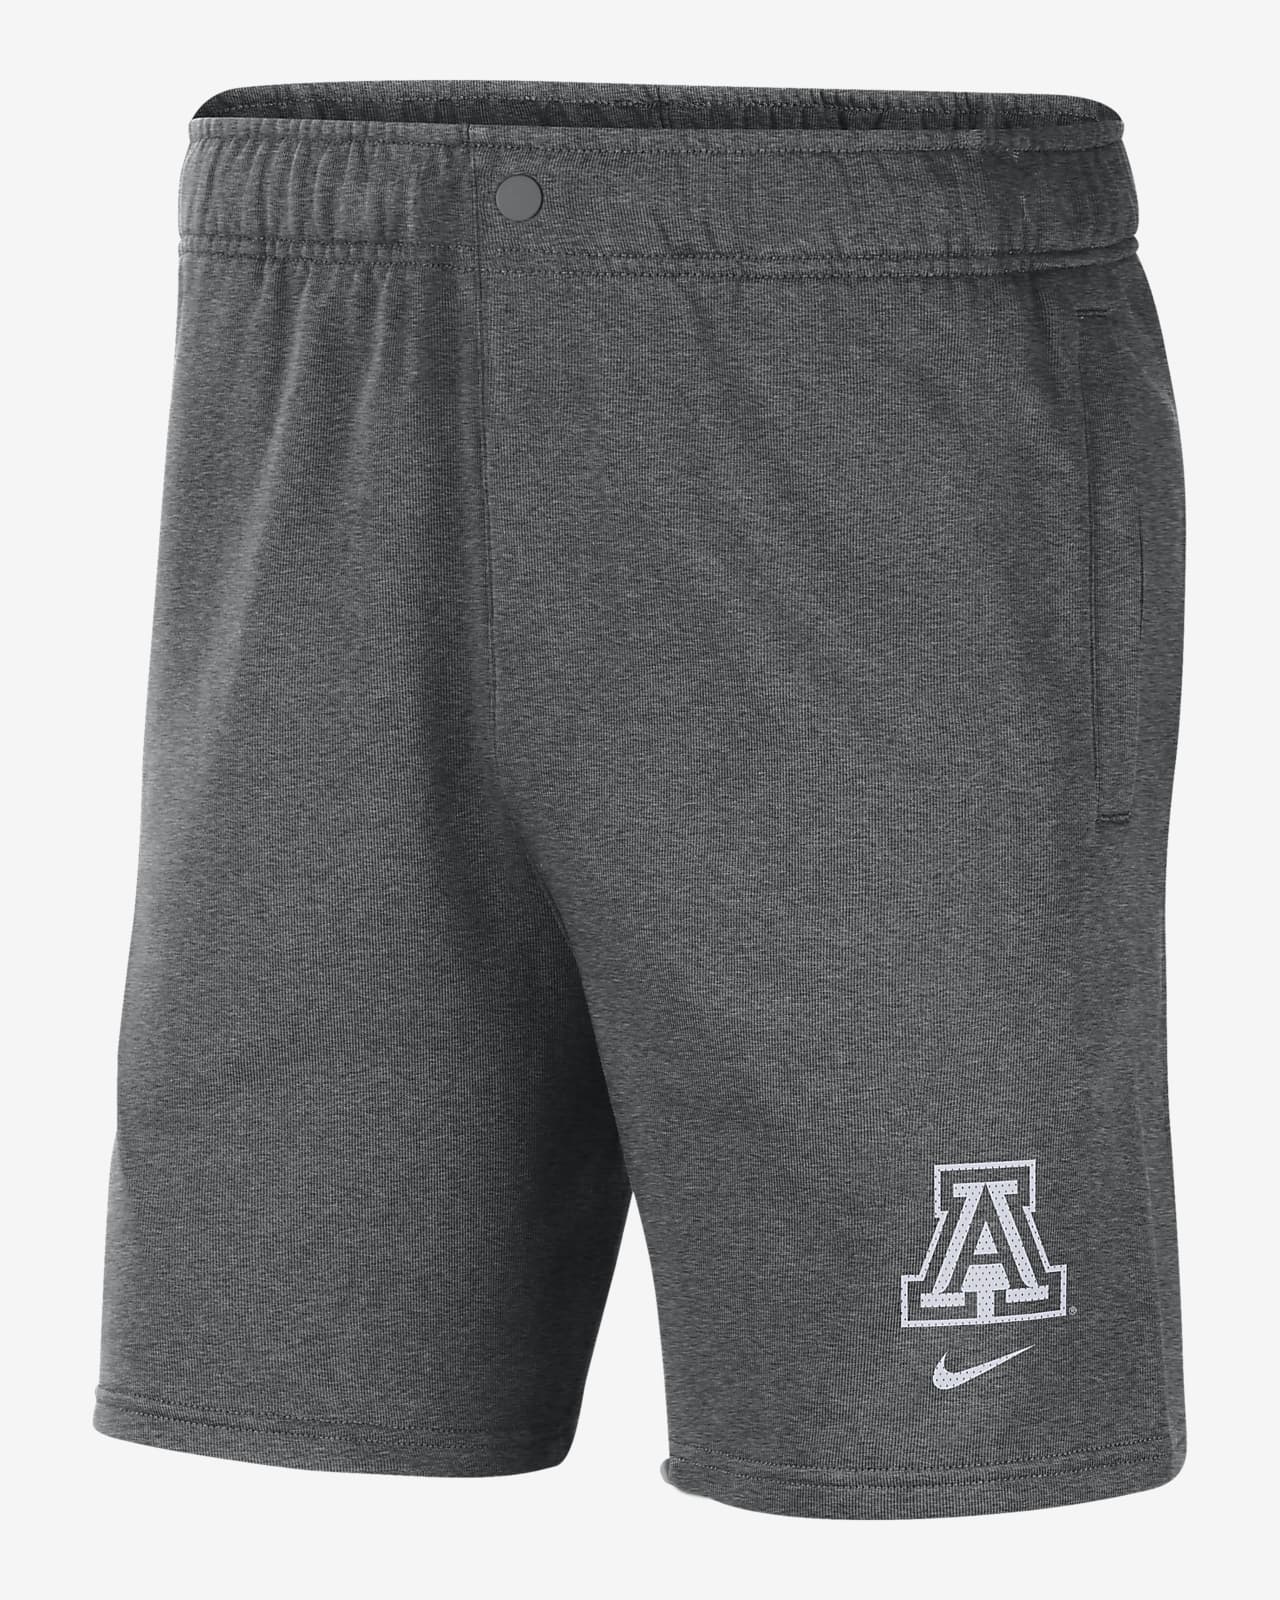 Arizona Men's Nike College Fleece Shorts